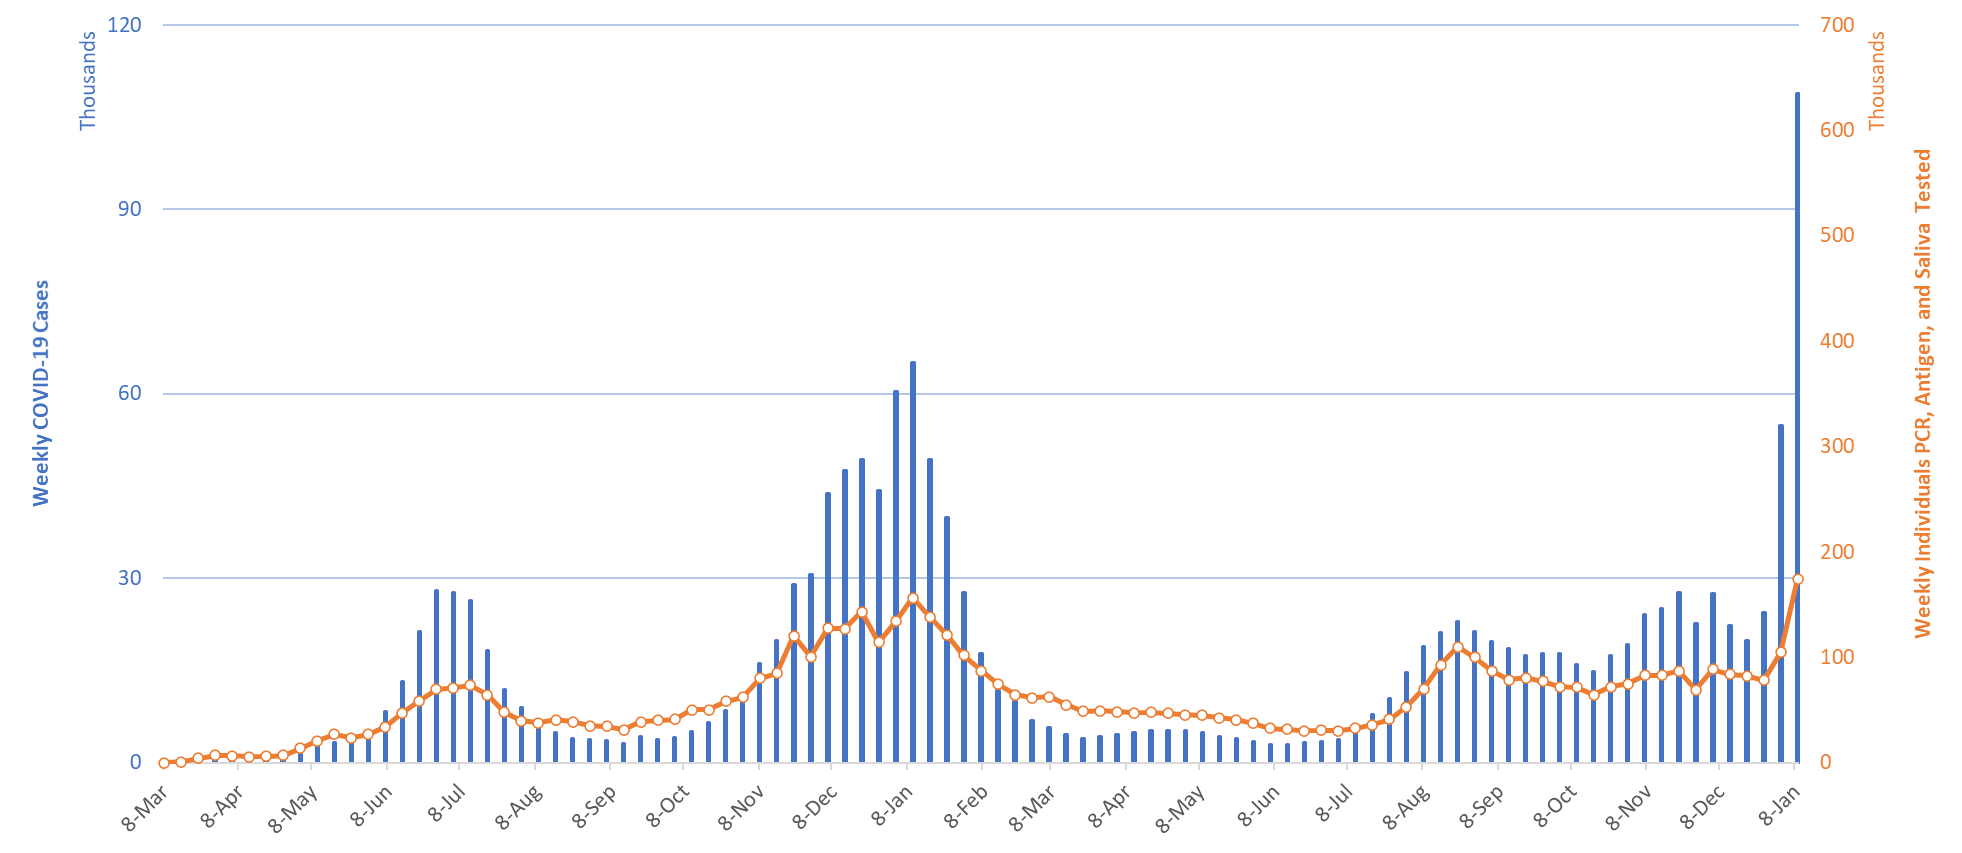 Graph coronavirus statistics India: the